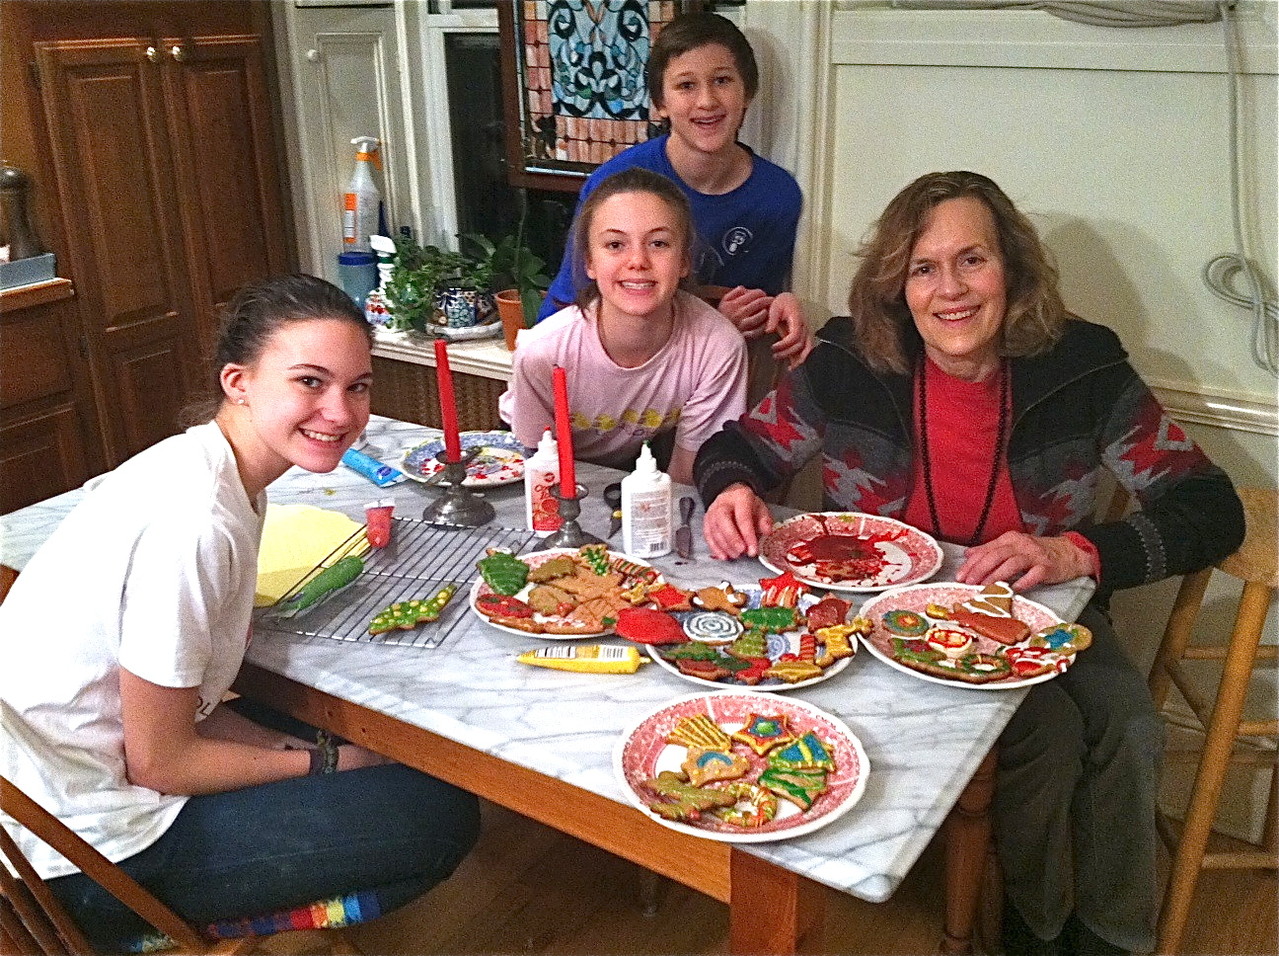 Ellie, Kate, Jack, & Lorraine decorating cookies 12/2012